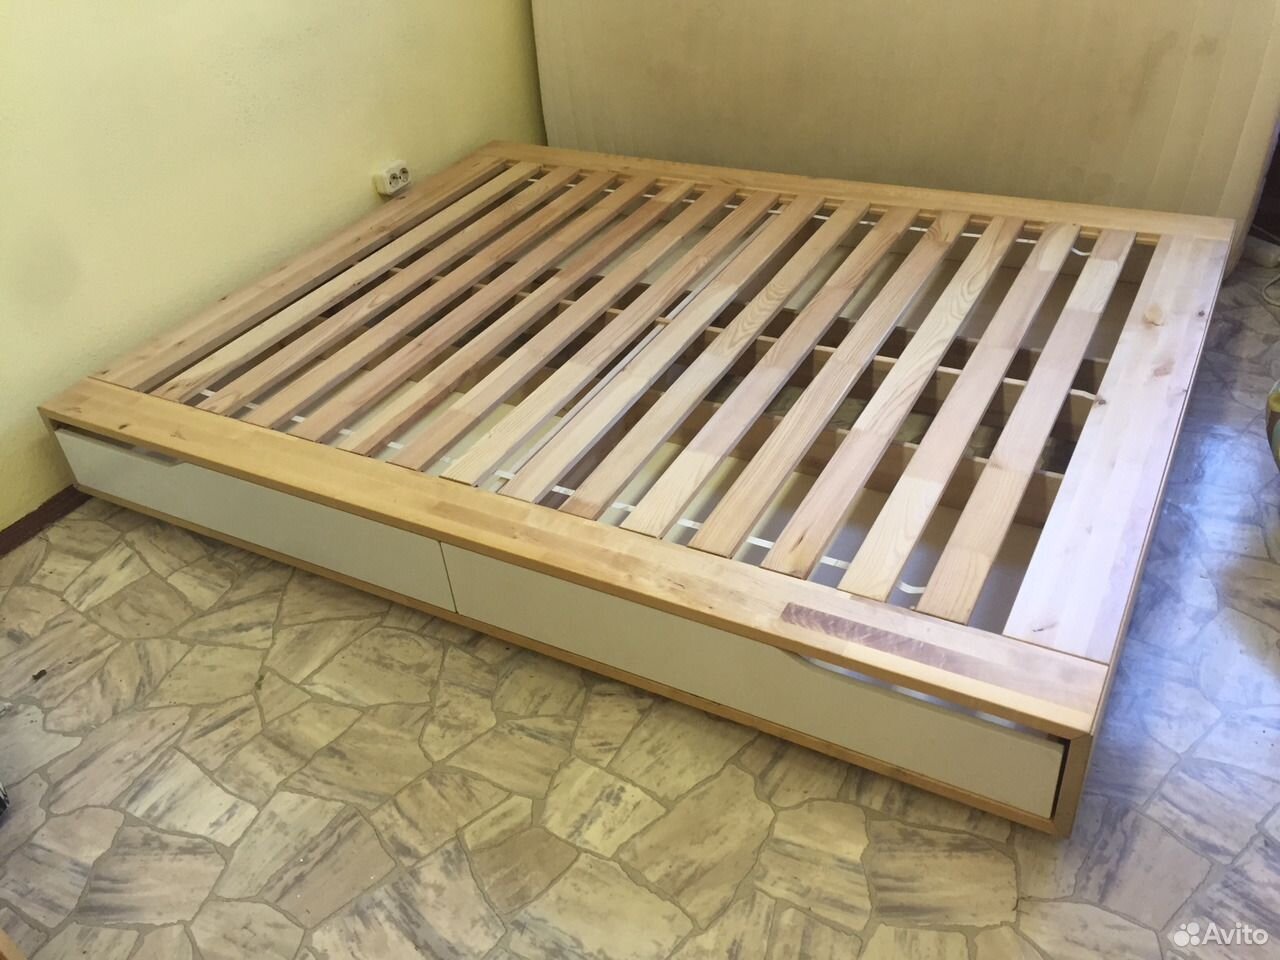 кровать икеа двуспальная деревянная размеры